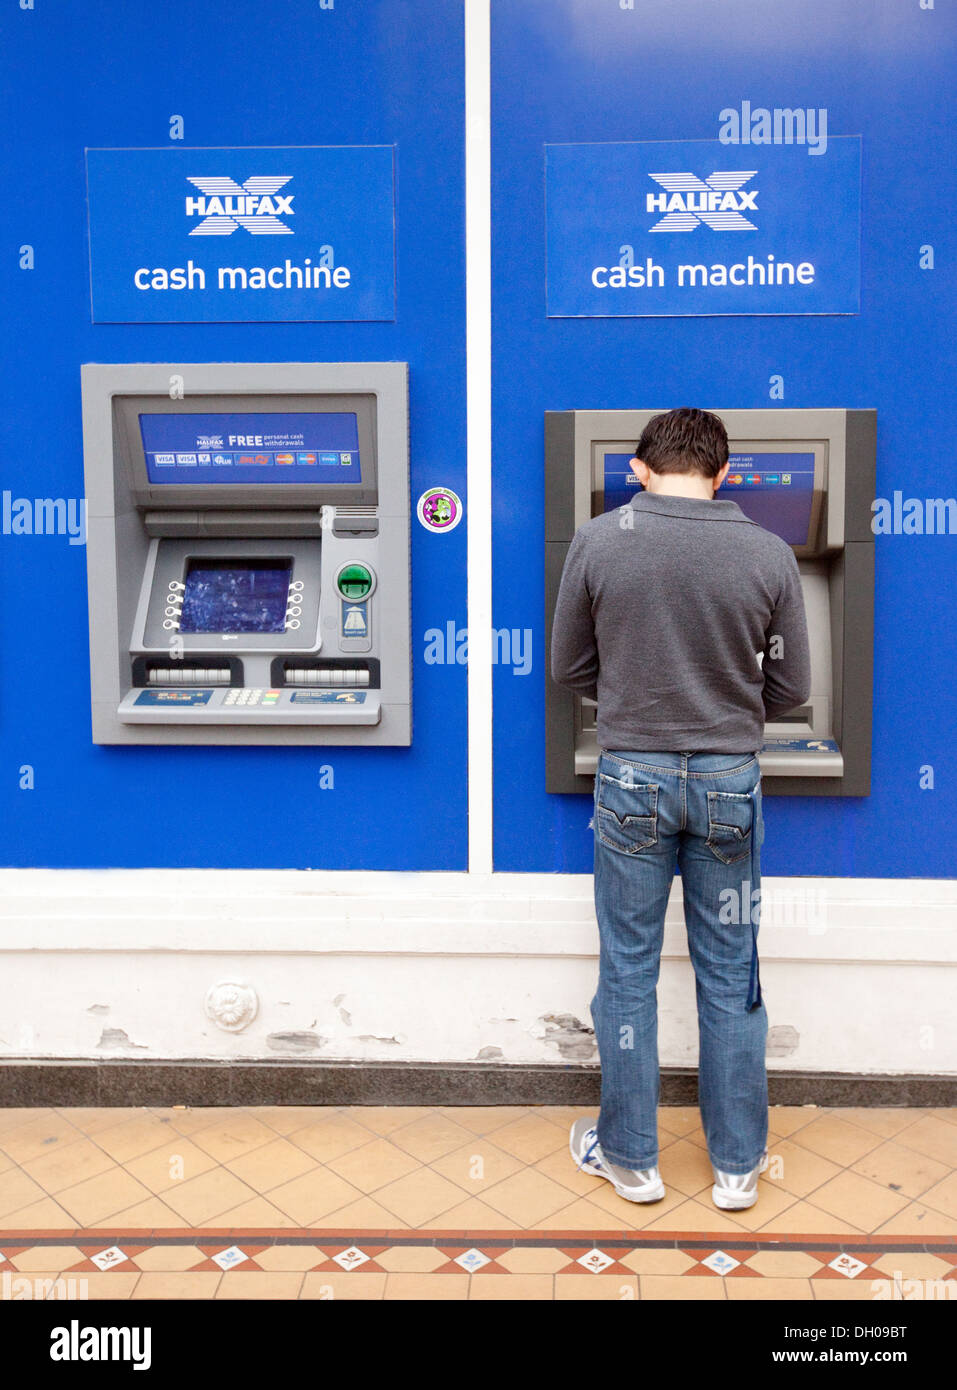 Un homme à percevoir de l'argent à partir d'un GAB de la banque Halifax cash machine, Norwich UK Banque D'Images